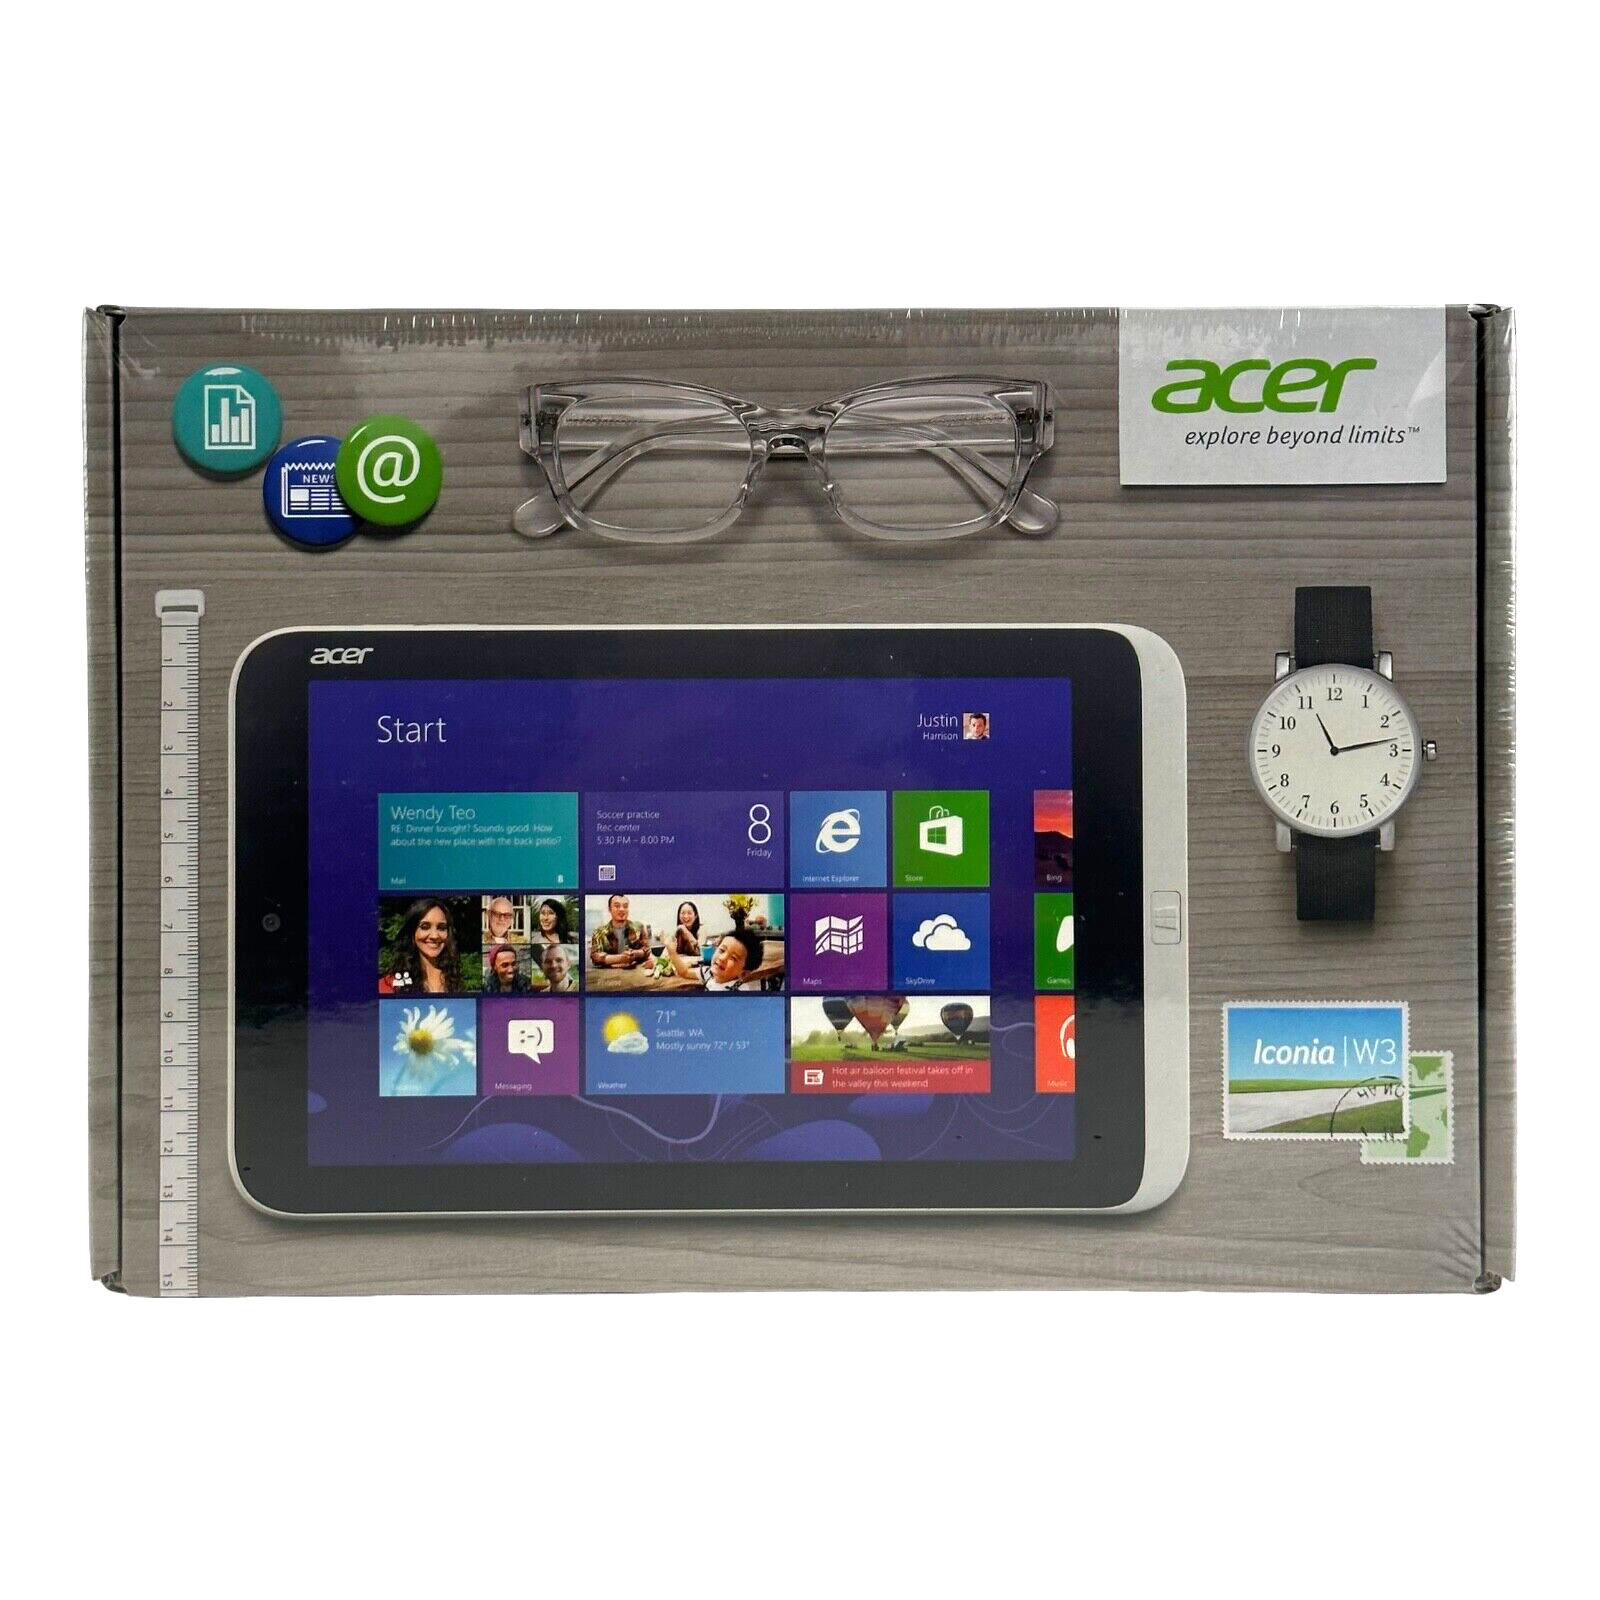 New Acer Iconia W3-810-1600 Win 8 | Intel Atom Z2760| 2GB Mem| 32GB eMMC